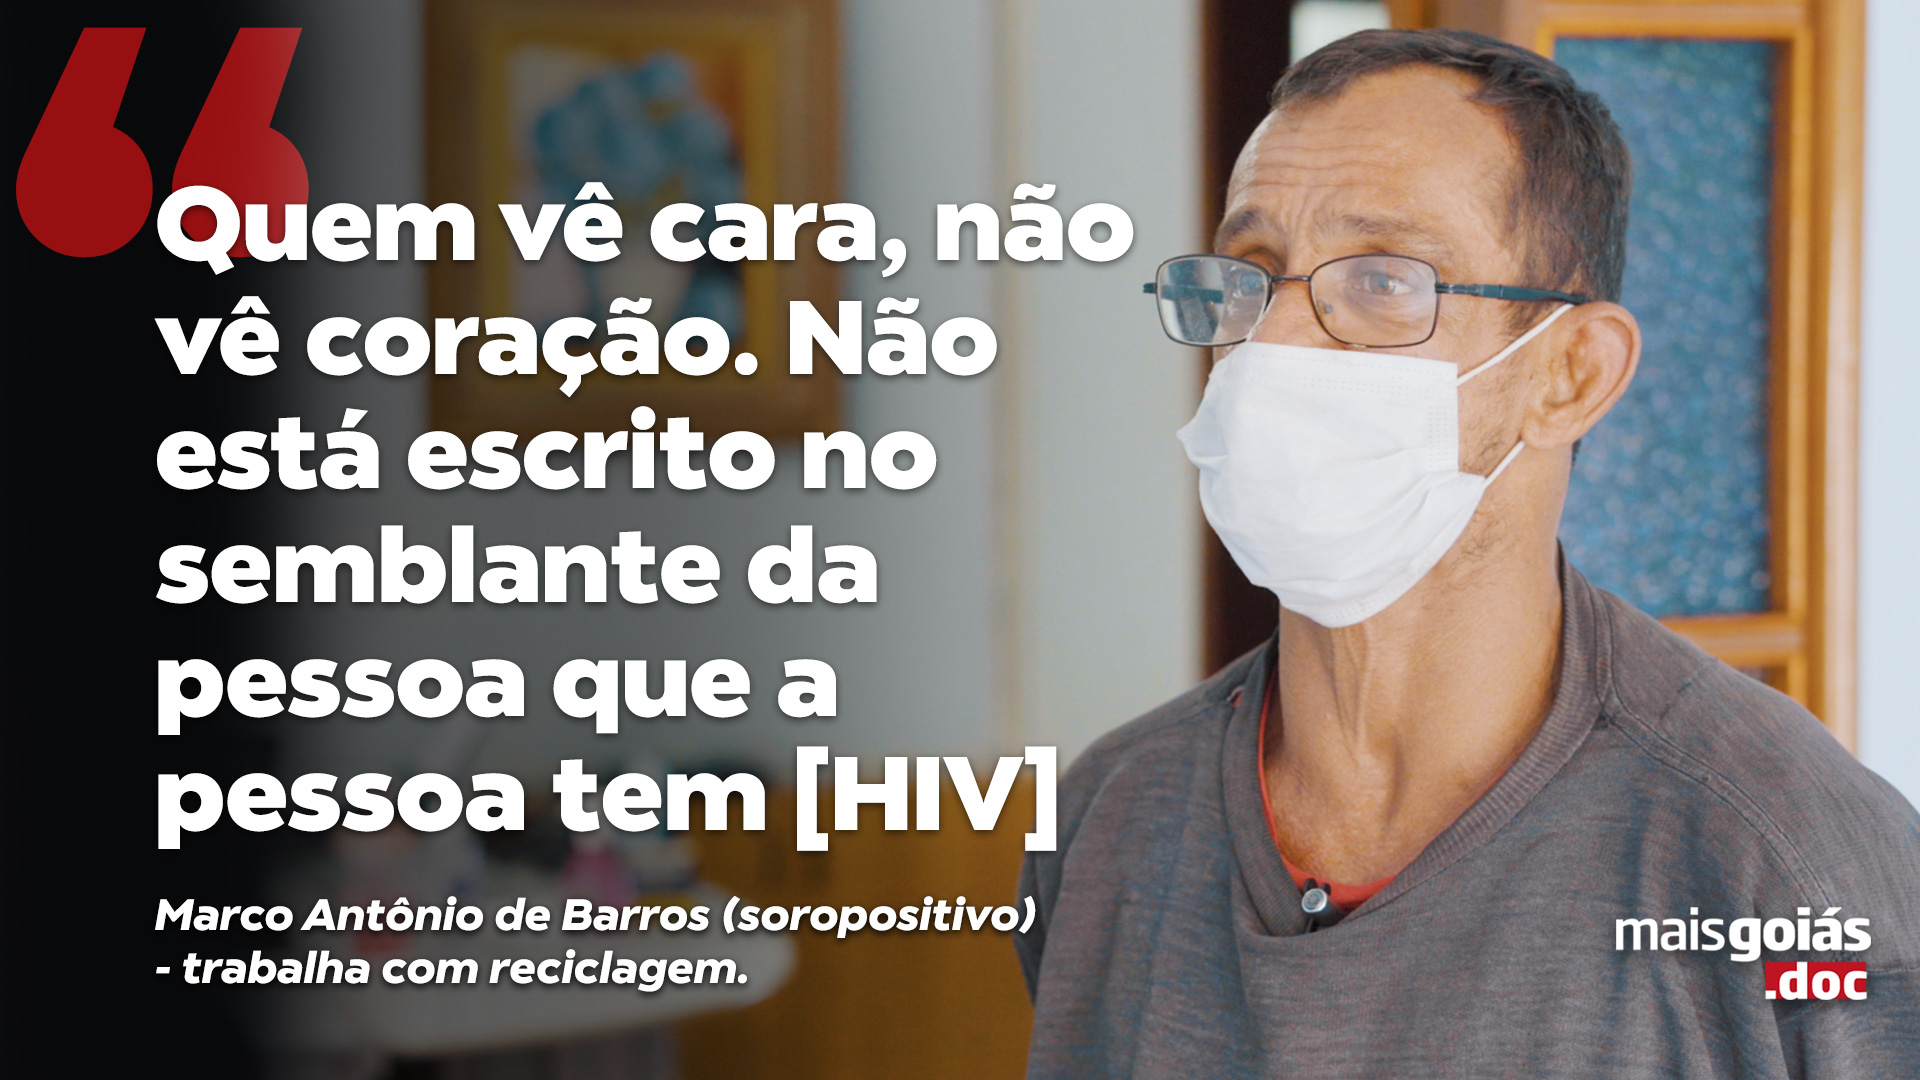 Em razão do Dezembro Vermelho - campanha de conscientização a respeito do HIV e da aids -, o Mais Goiás.doc desta semana retrata os desafios, preconceitos e a história da doença no Brasil. 